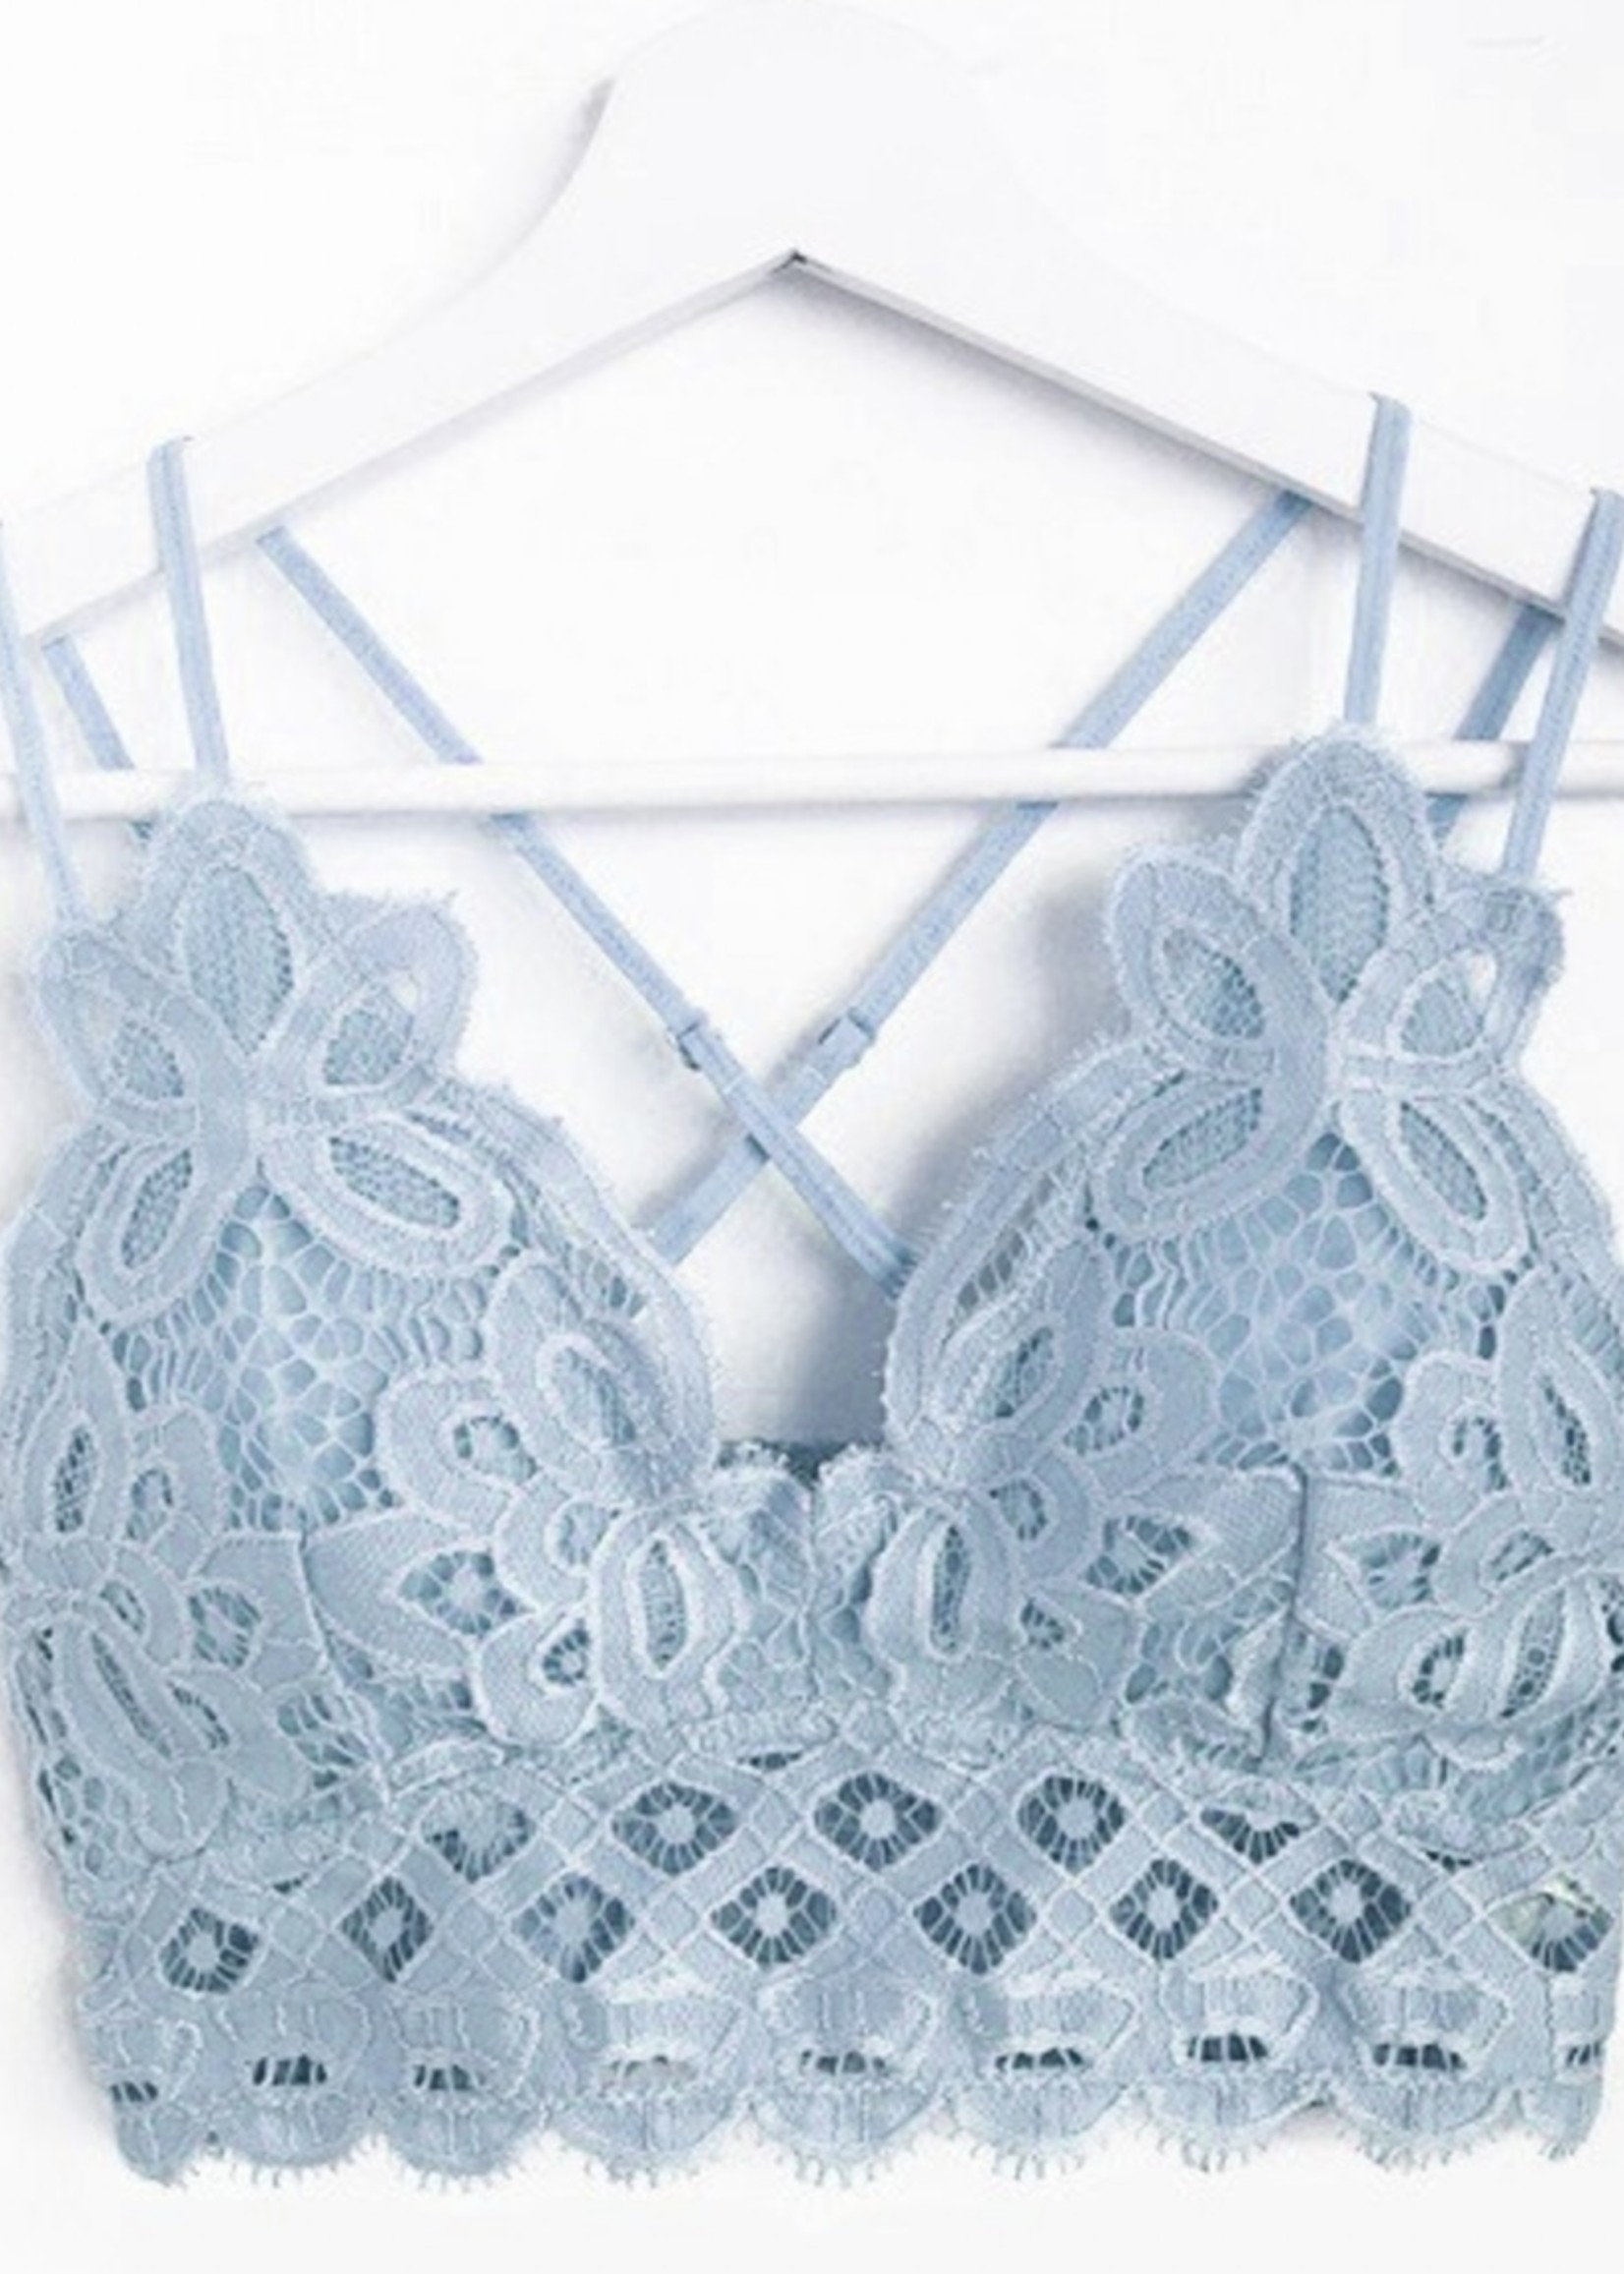 Crochet Lace Bralette